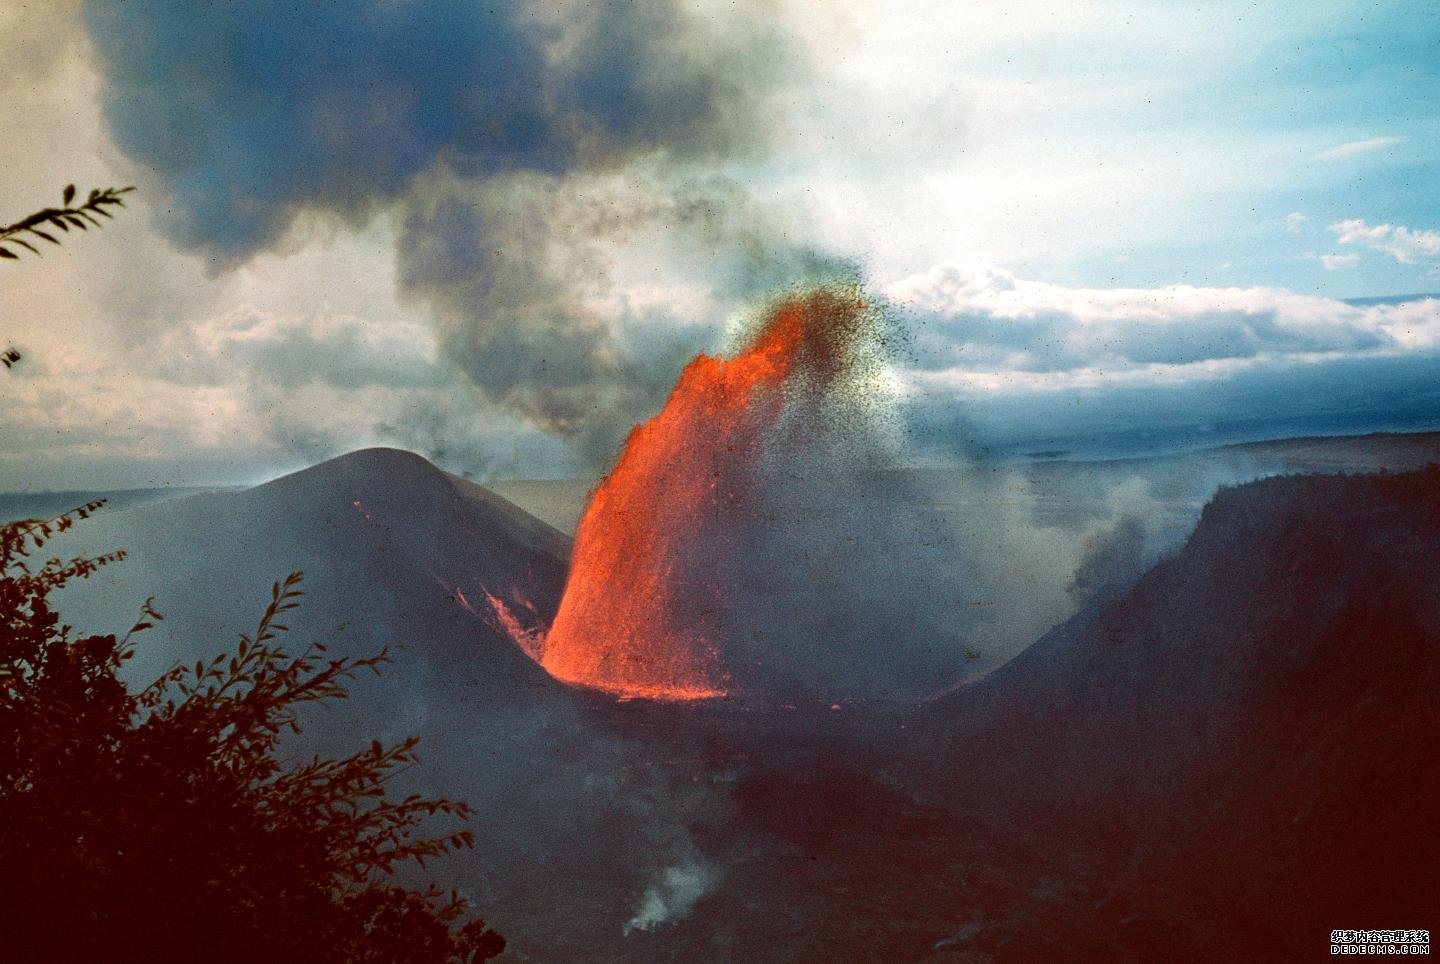 晶体可能有助于揭示杏耀代理隐藏的基拉韦厄火山的行为